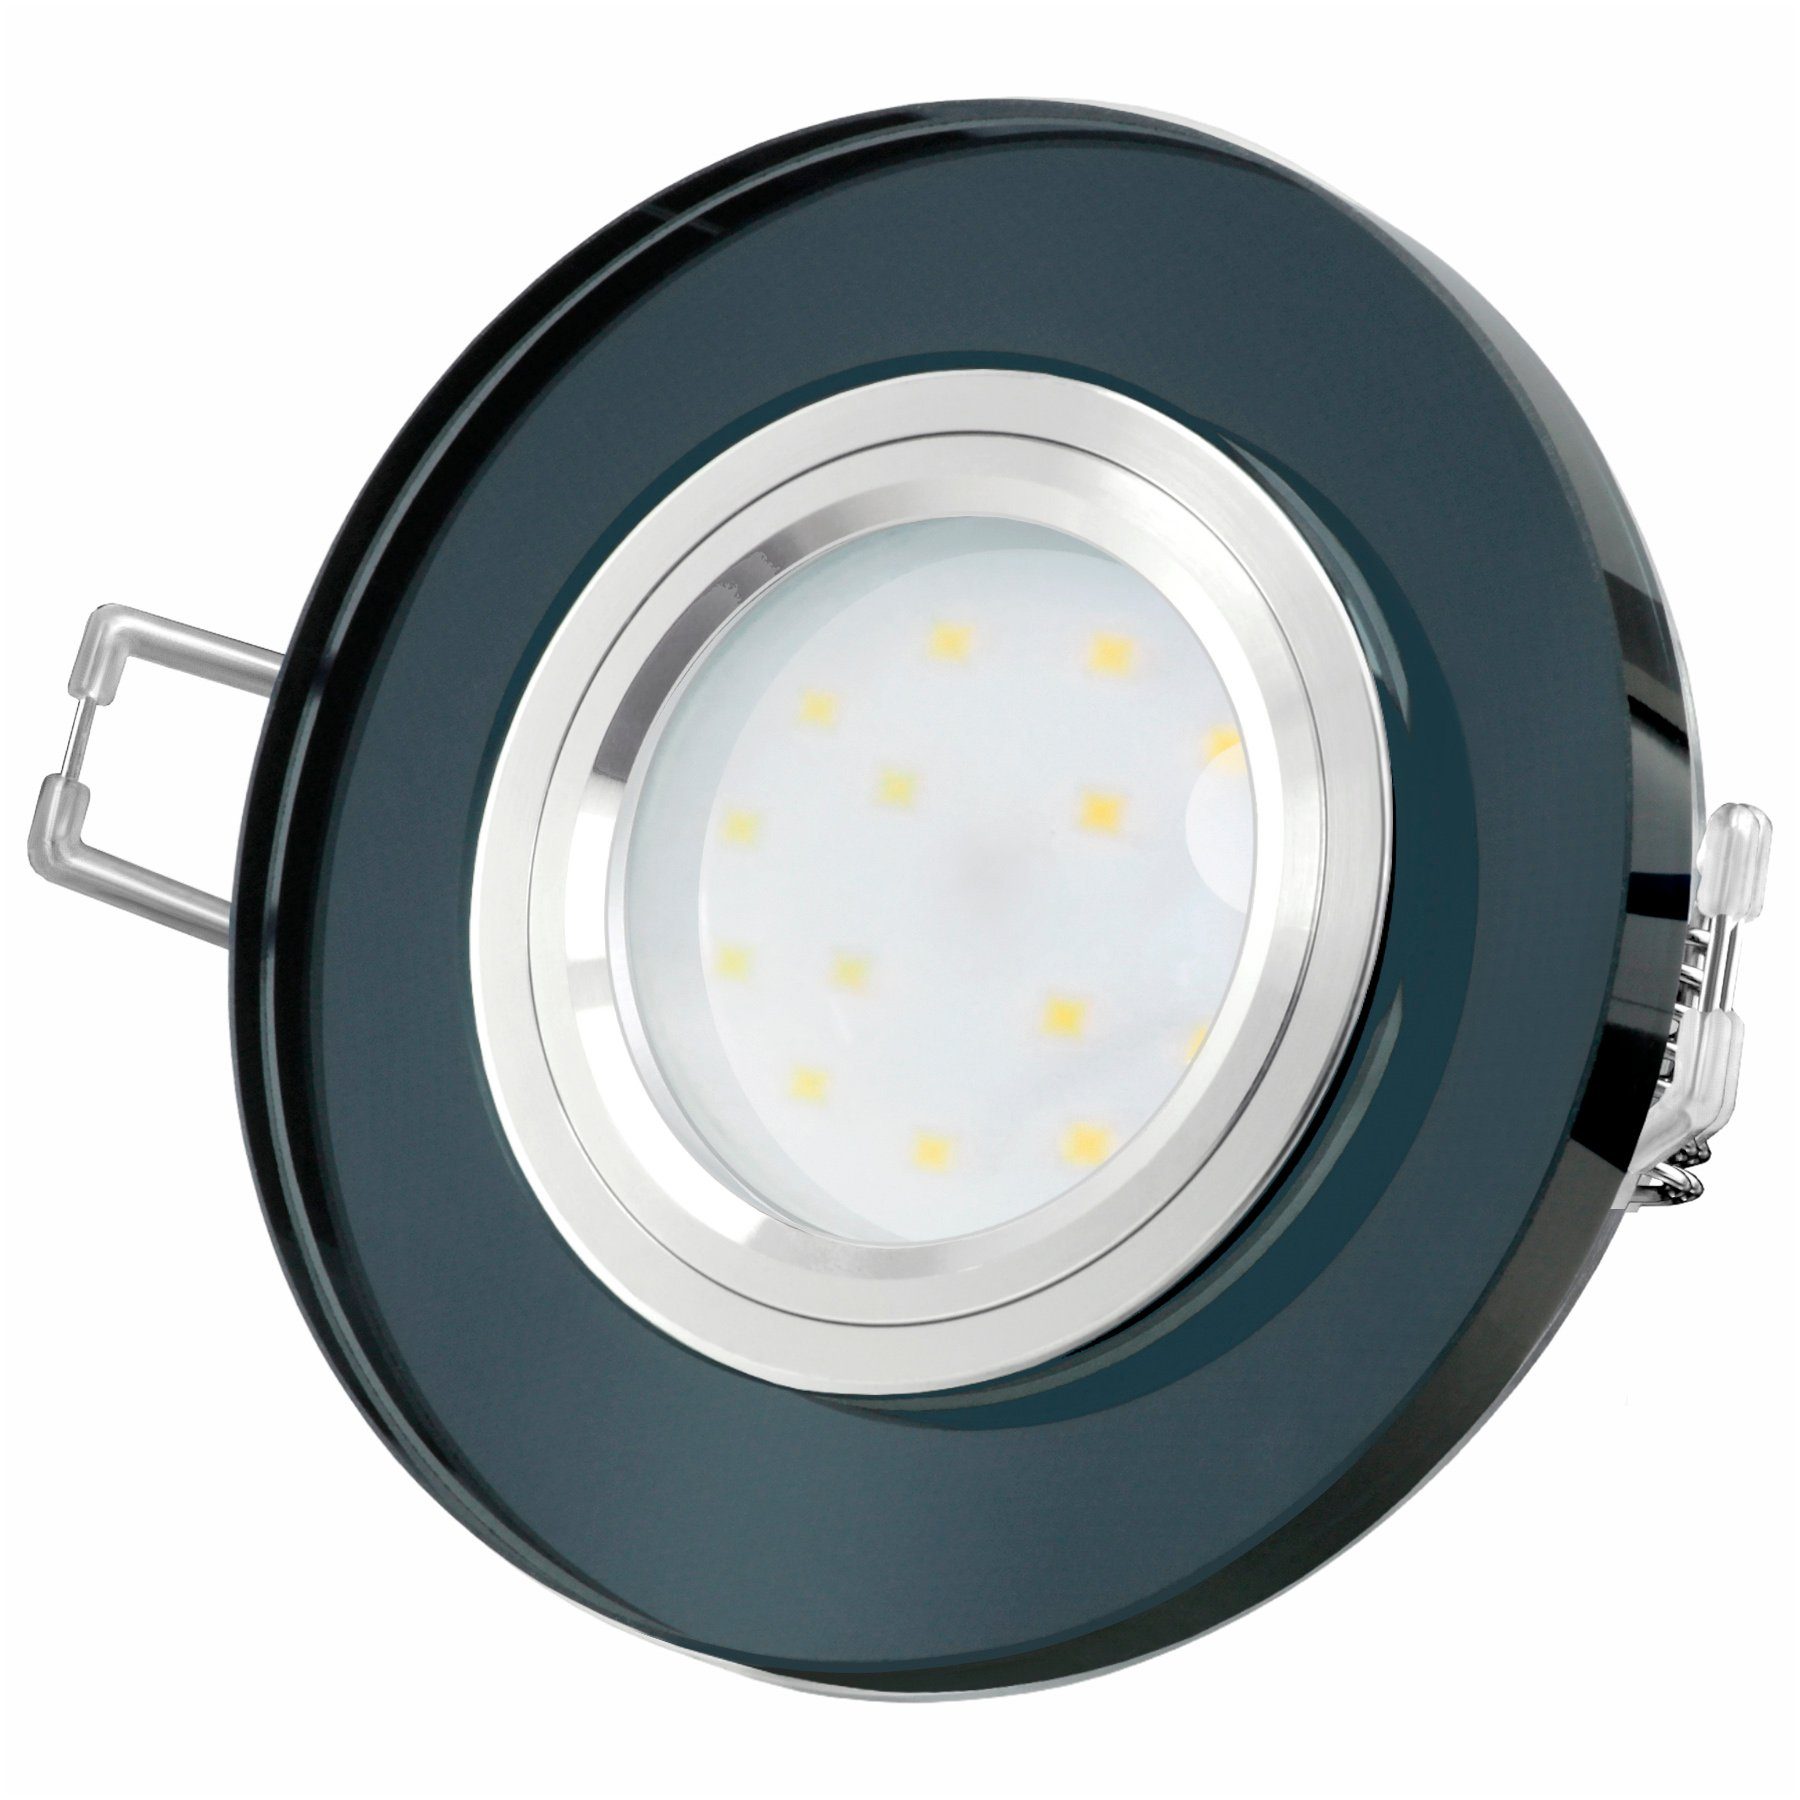 SSC-LUXon LED rund, Neutralweiß fourSTEP LED-Einbaustrahler Glas flach, LED, schwarz spiegelnd, Einbaustrahler